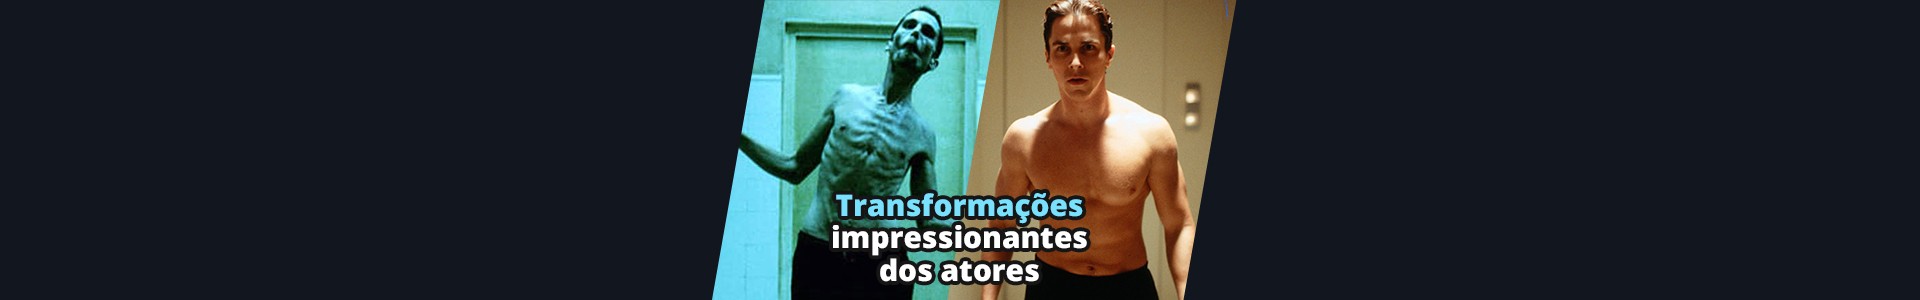 9 transformações impressionantes que atores fizeram por um papel